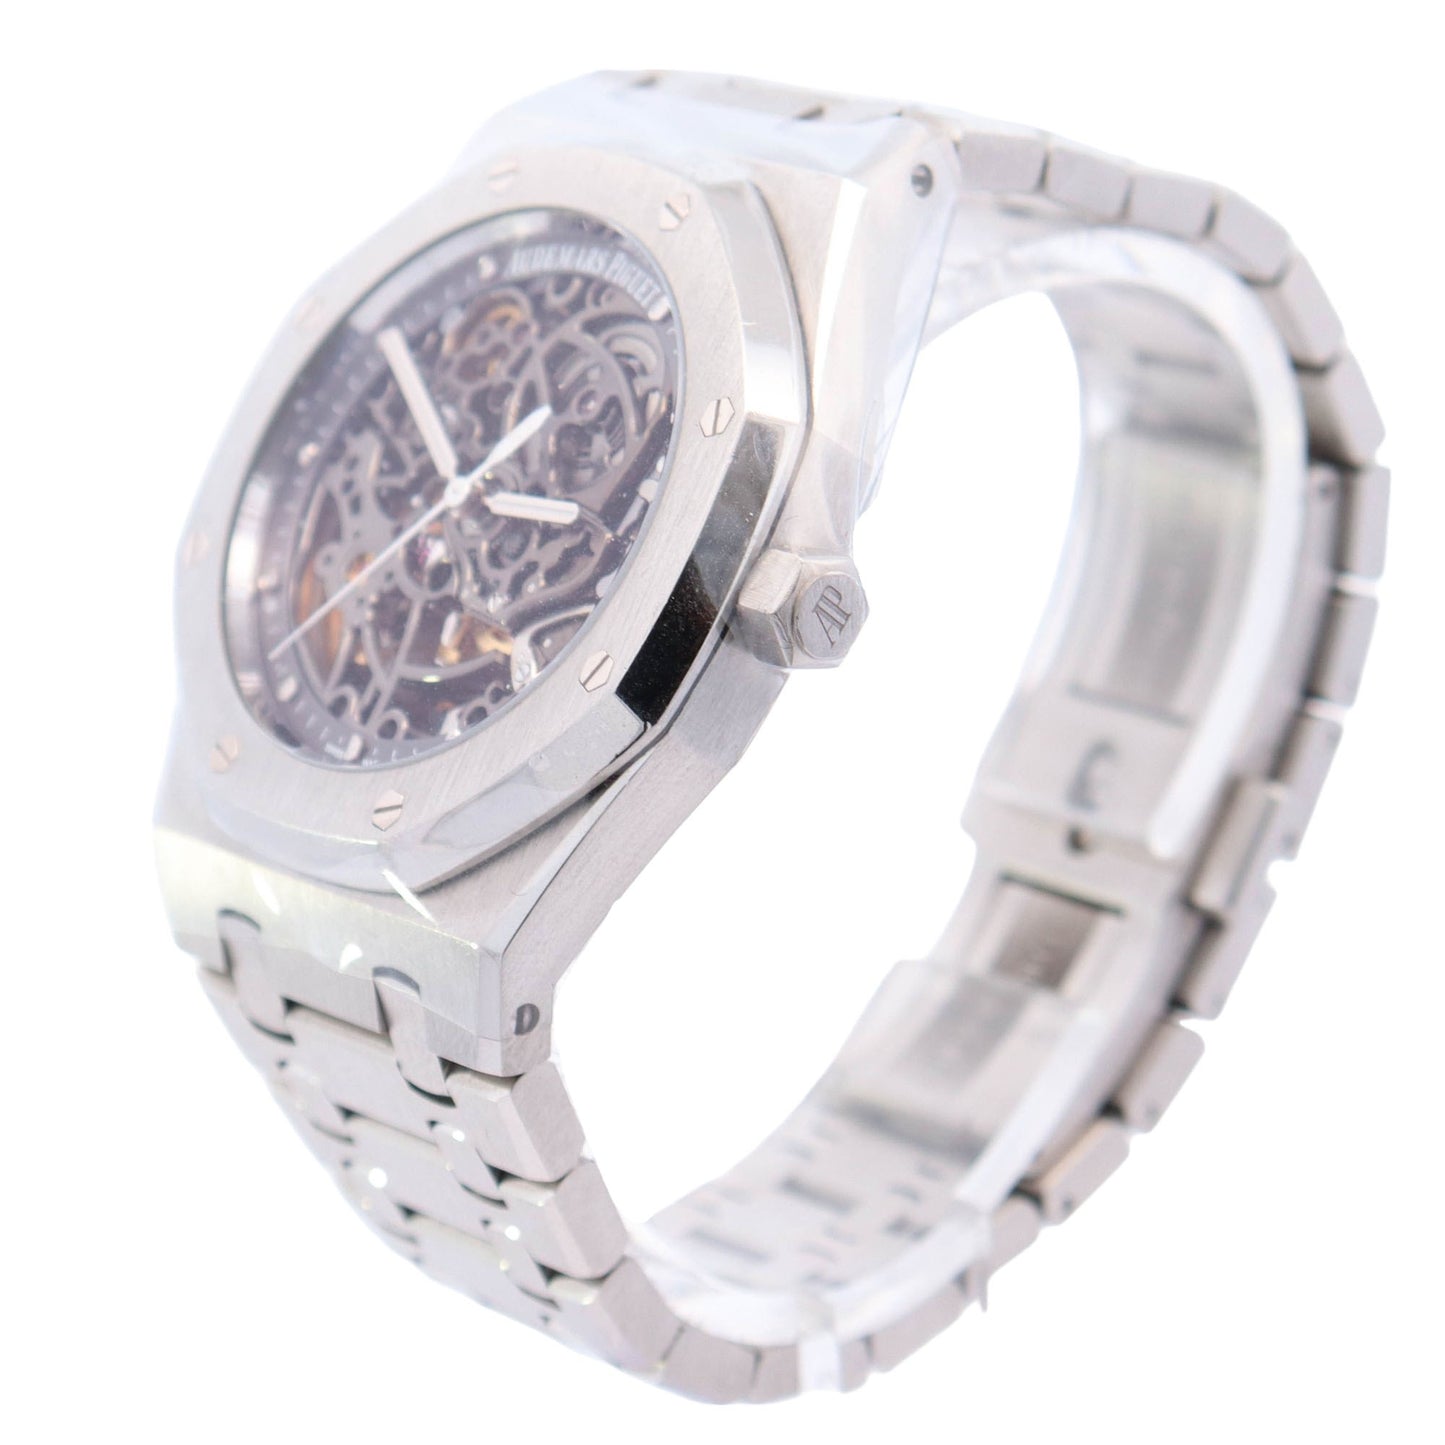 Audemars Piguet Royal Oak 39mm Stainless Steel Skeleton Dial Watch Ref# 15305ST.OO.1220ST.01